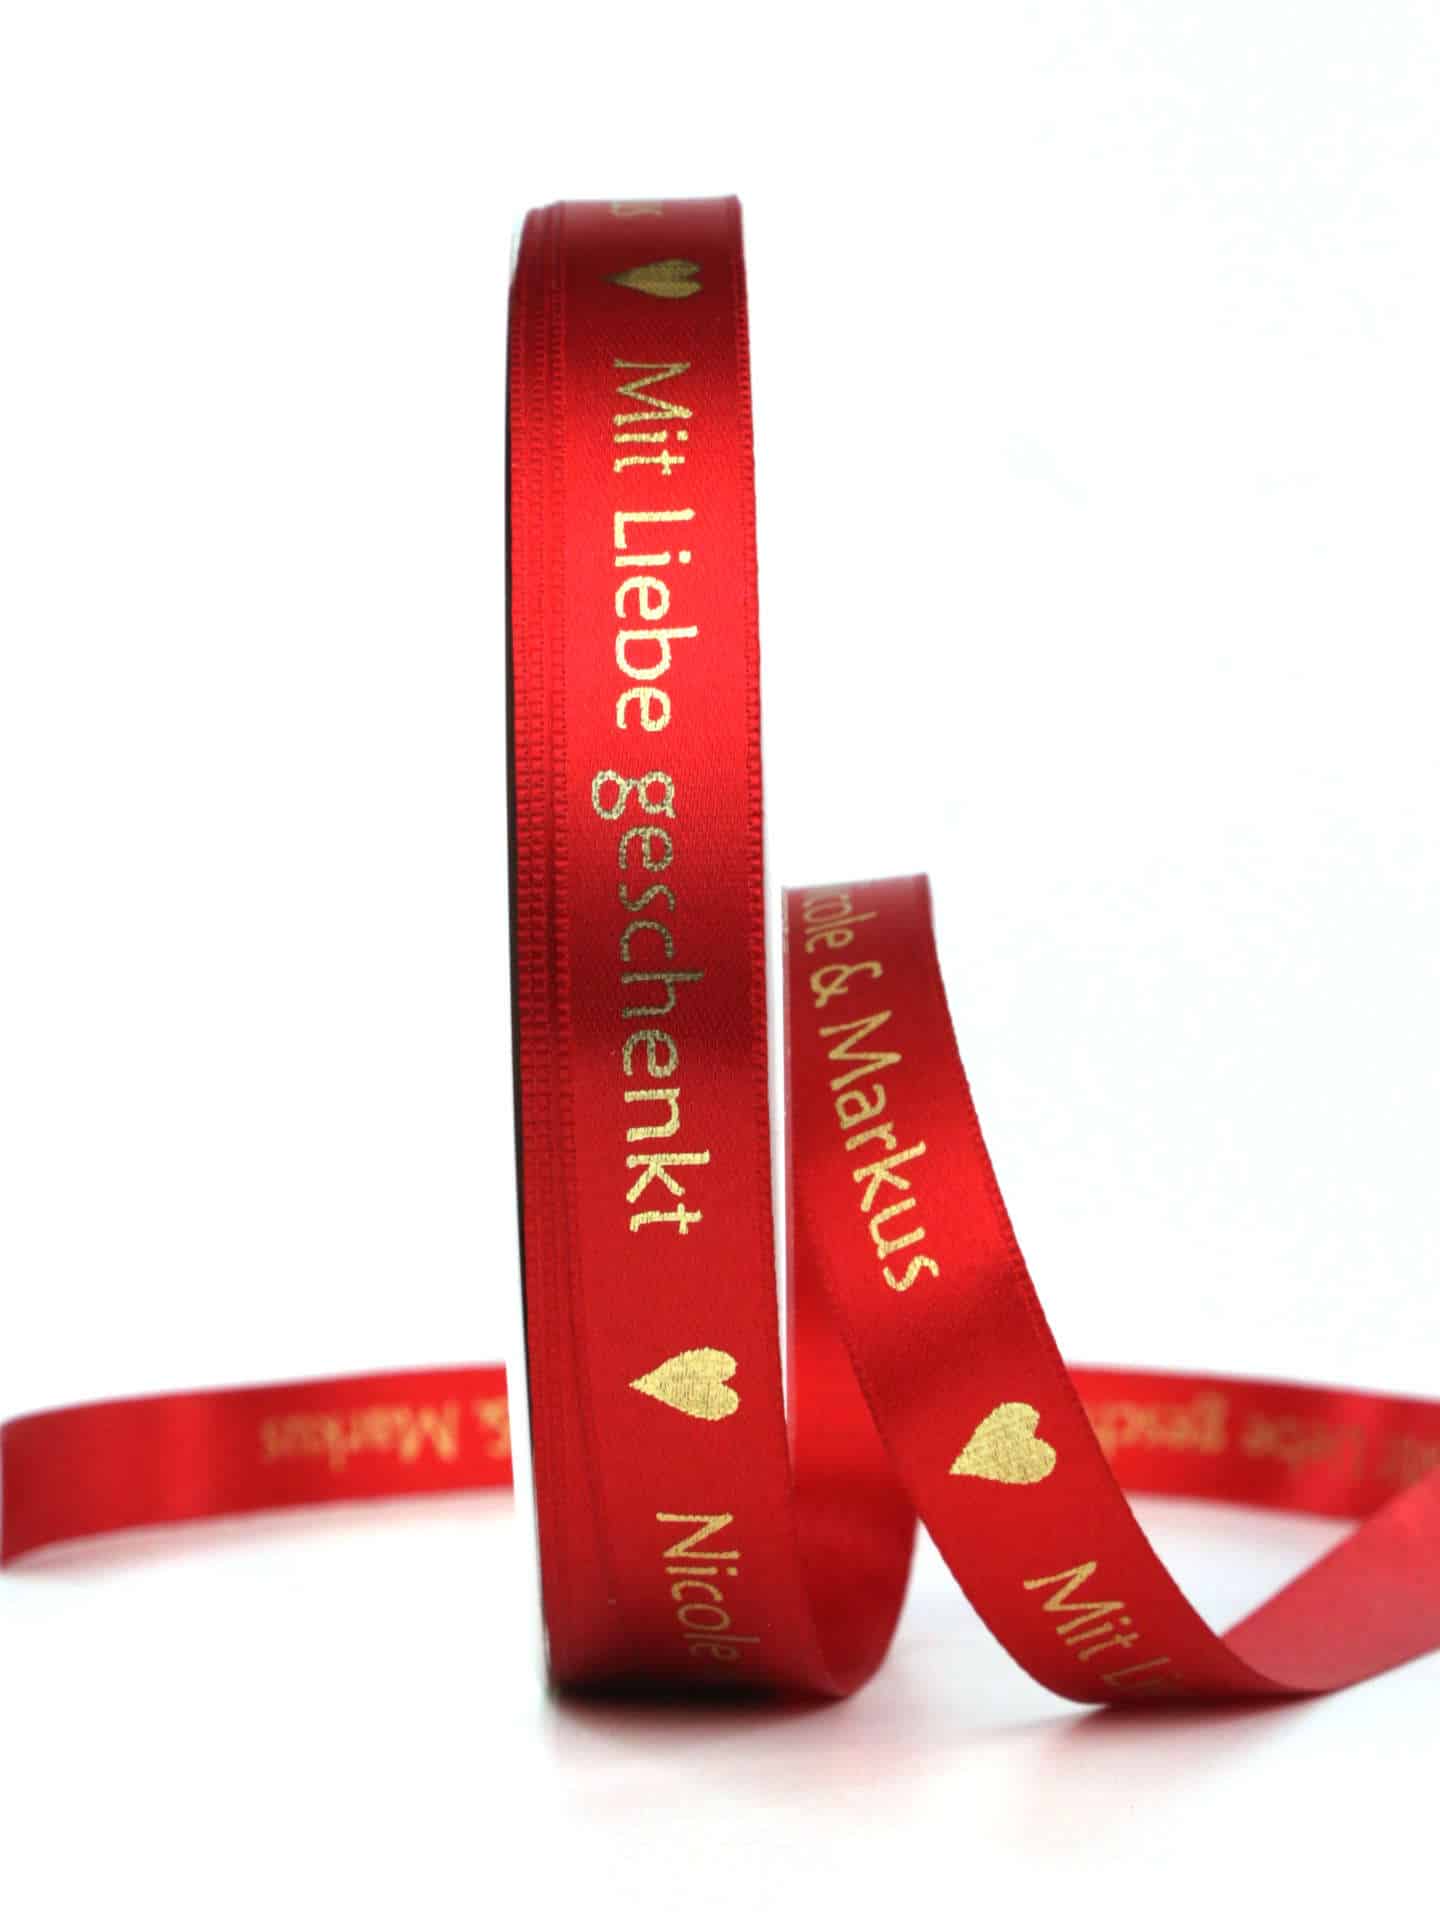 Geschenkband "Mit Liebe geschenkt" + Ihr Name, rot/gold, 15 mm breit - weihnachtsband, geschenkband-weihnachten-weihnachtsbaender, weihnachtsbaender, geschenkband-fuer-anlaesse-geschenkbaender, geschenkbaender, personalisierte-baender